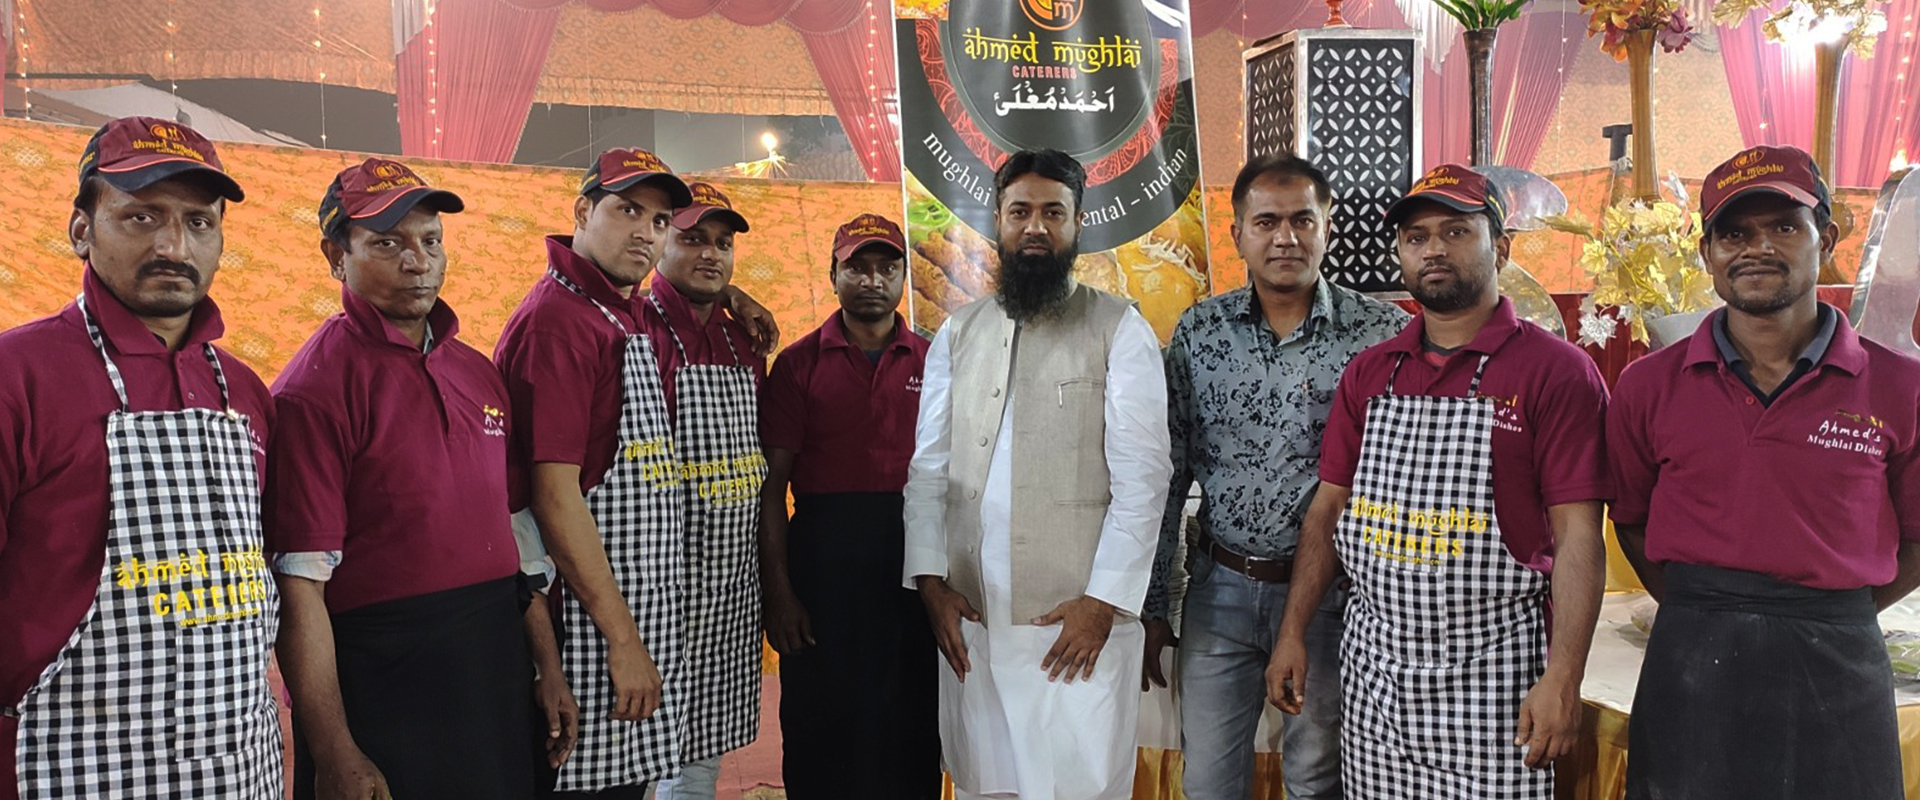 Ahmed Mughlai Catering Management in Delhi